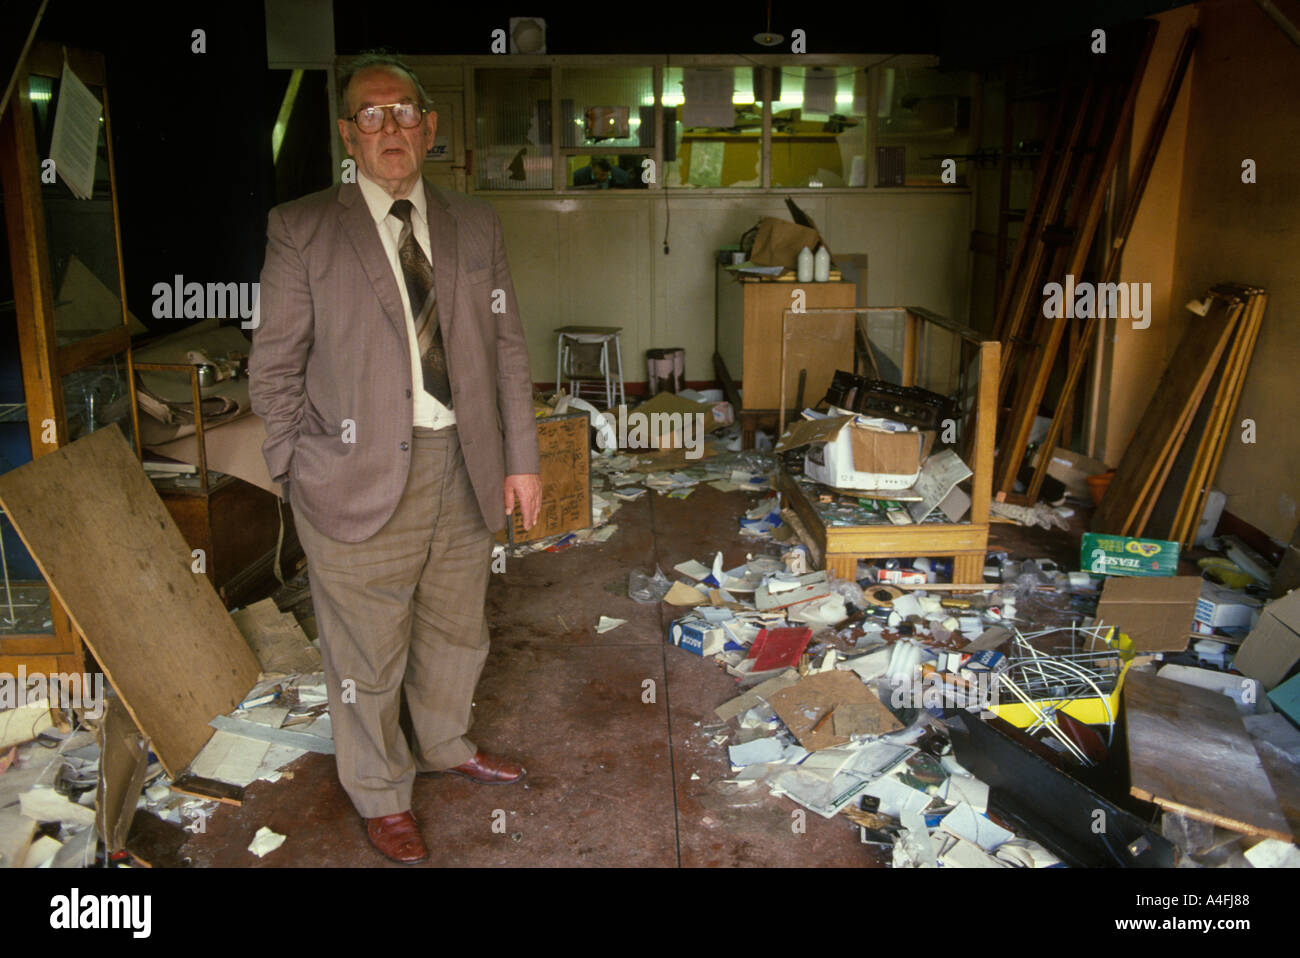 Toxteth Riots Liverpool 8. Juli 1981 Shop und Besitzer am Morgen nach den Unruhen wurden seine Räumlichkeiten vollständig zerstört und geplündert. 1980er Jahre UK Stockfoto